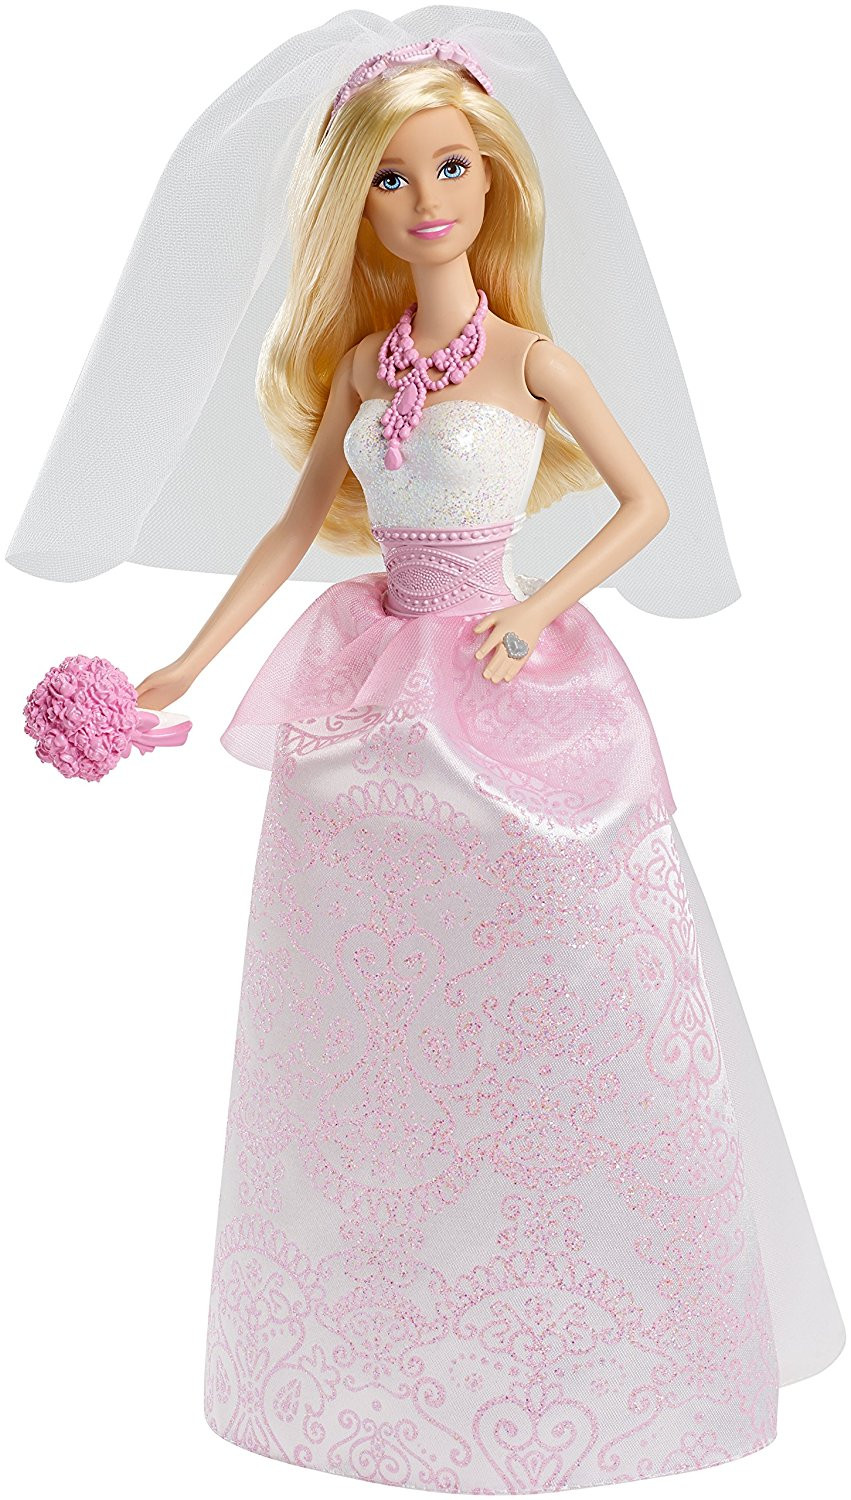 Barbie Hochzeitskleid
 Barbie Fairytale Bride Doll Barbie Collectibles